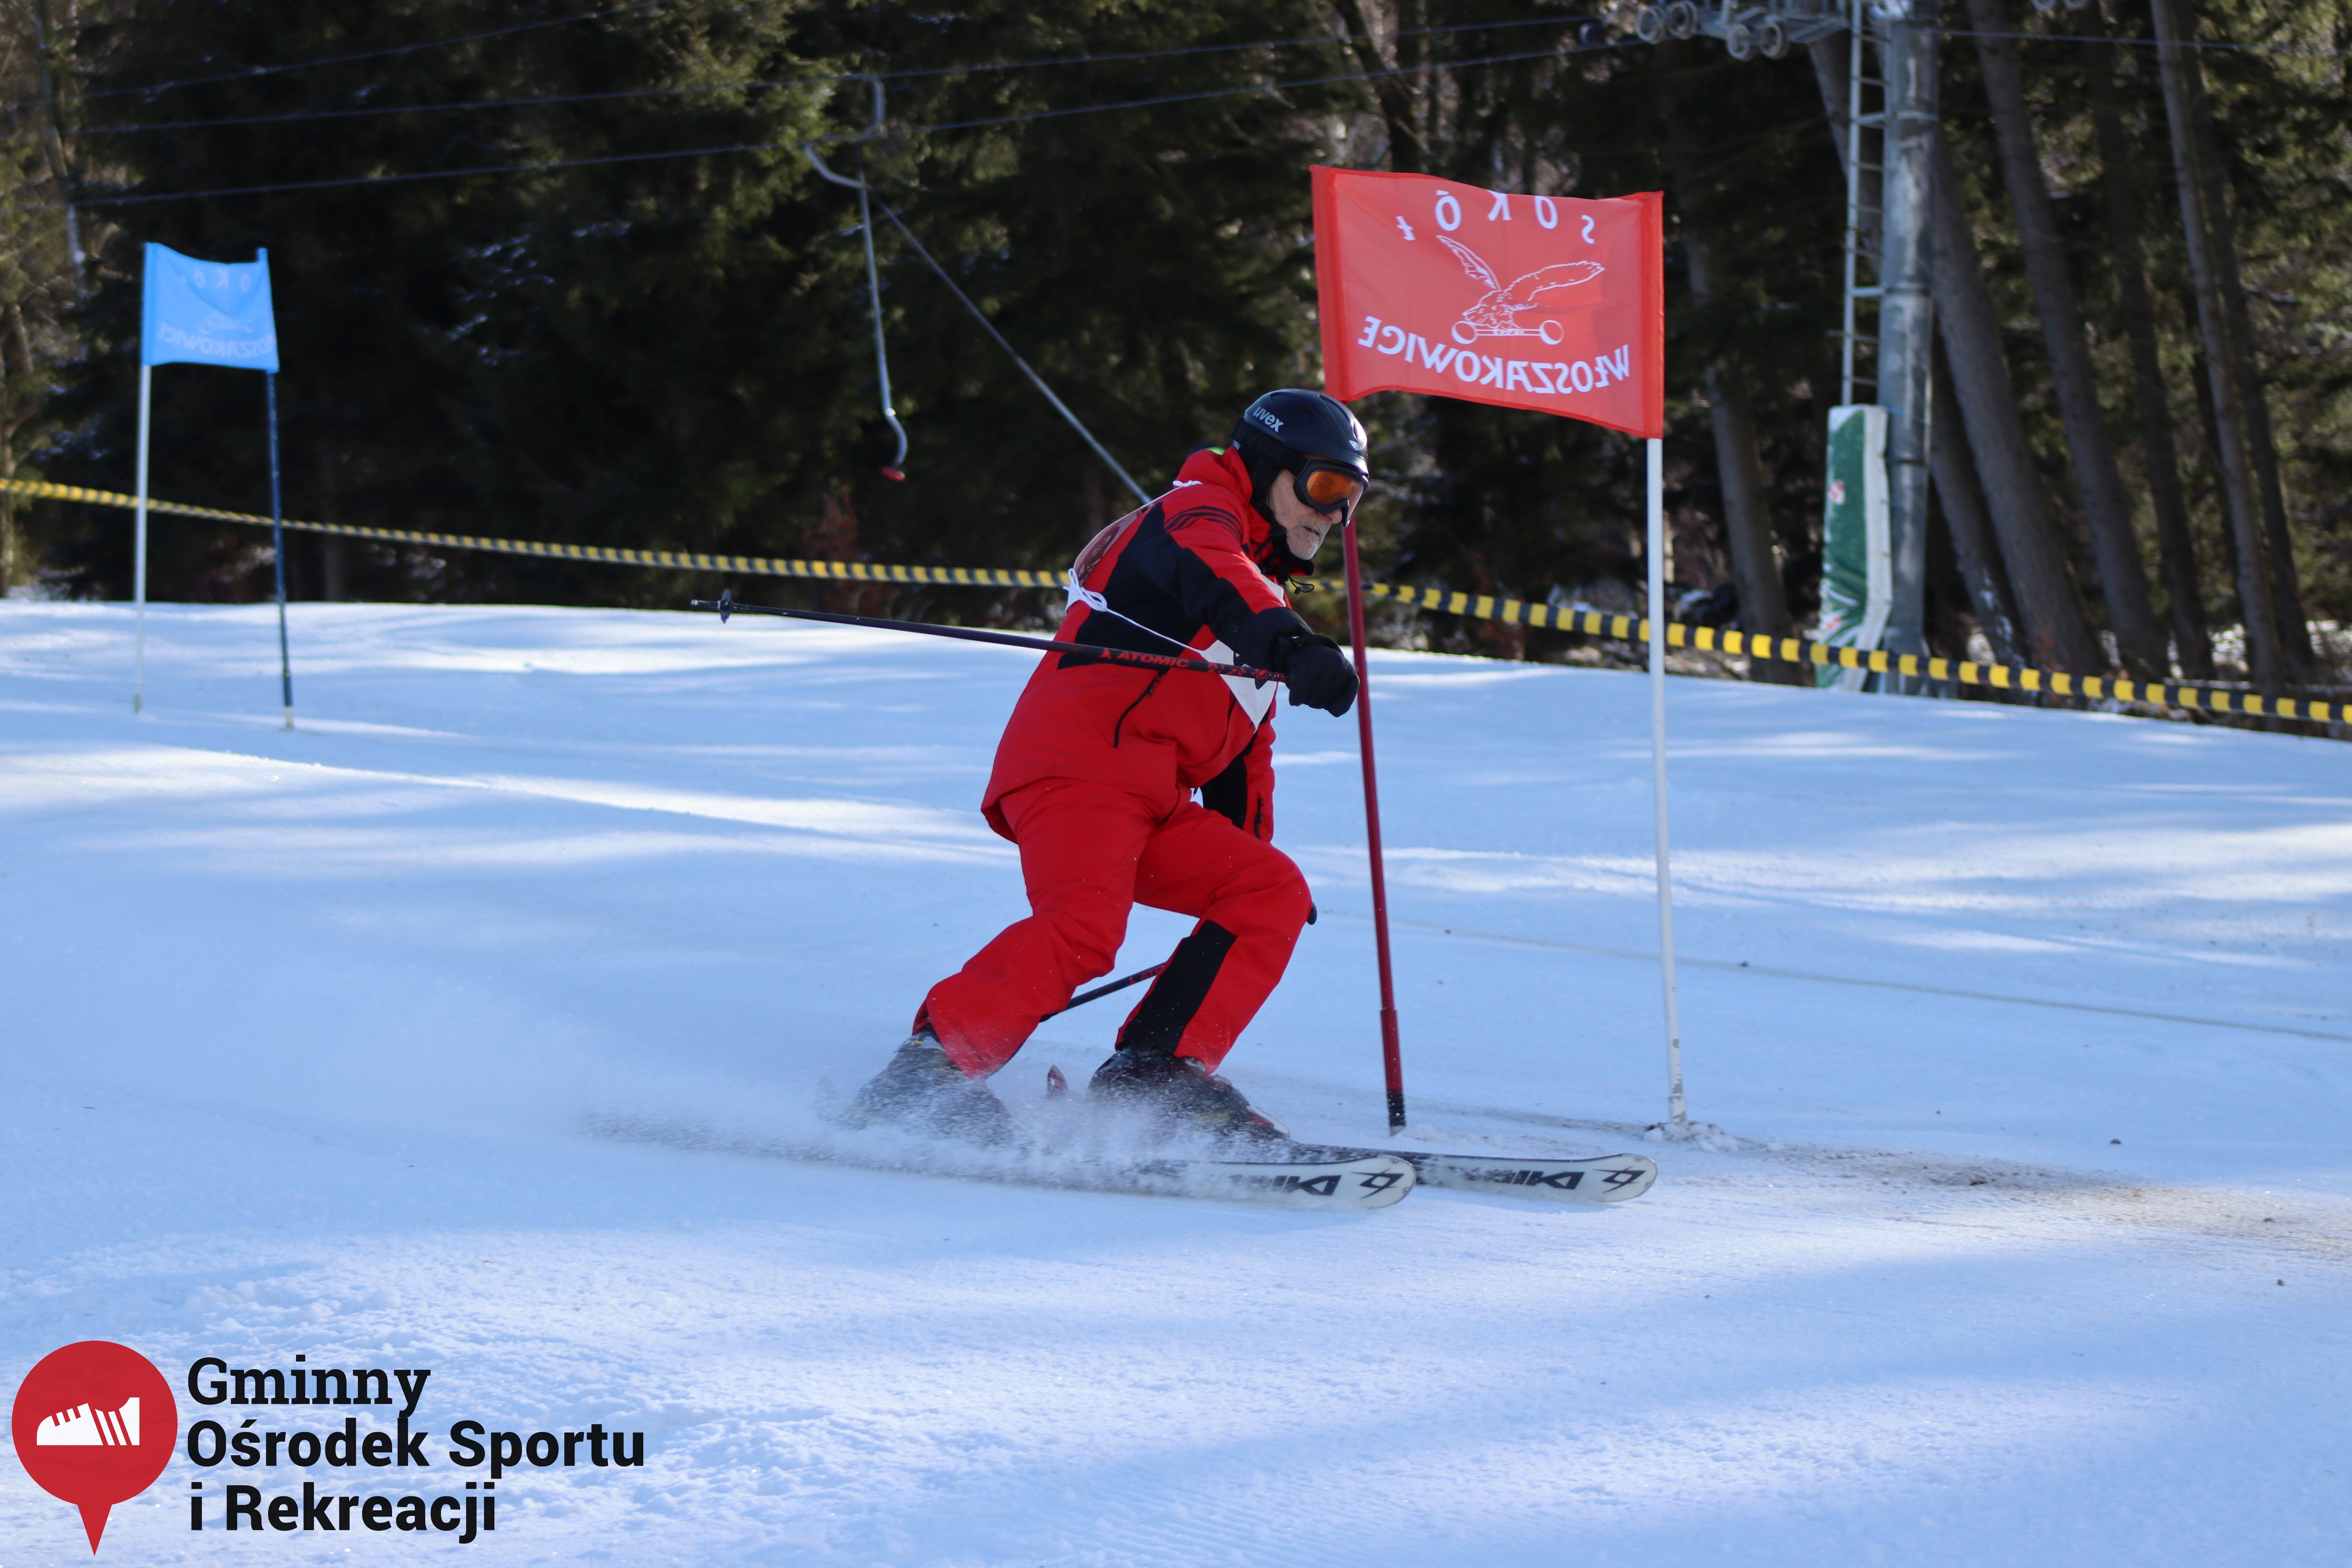 2022.02.12 - 18. Mistrzostwa Gminy Woszakowice w narciarstwie041.jpg - 1,44 MB